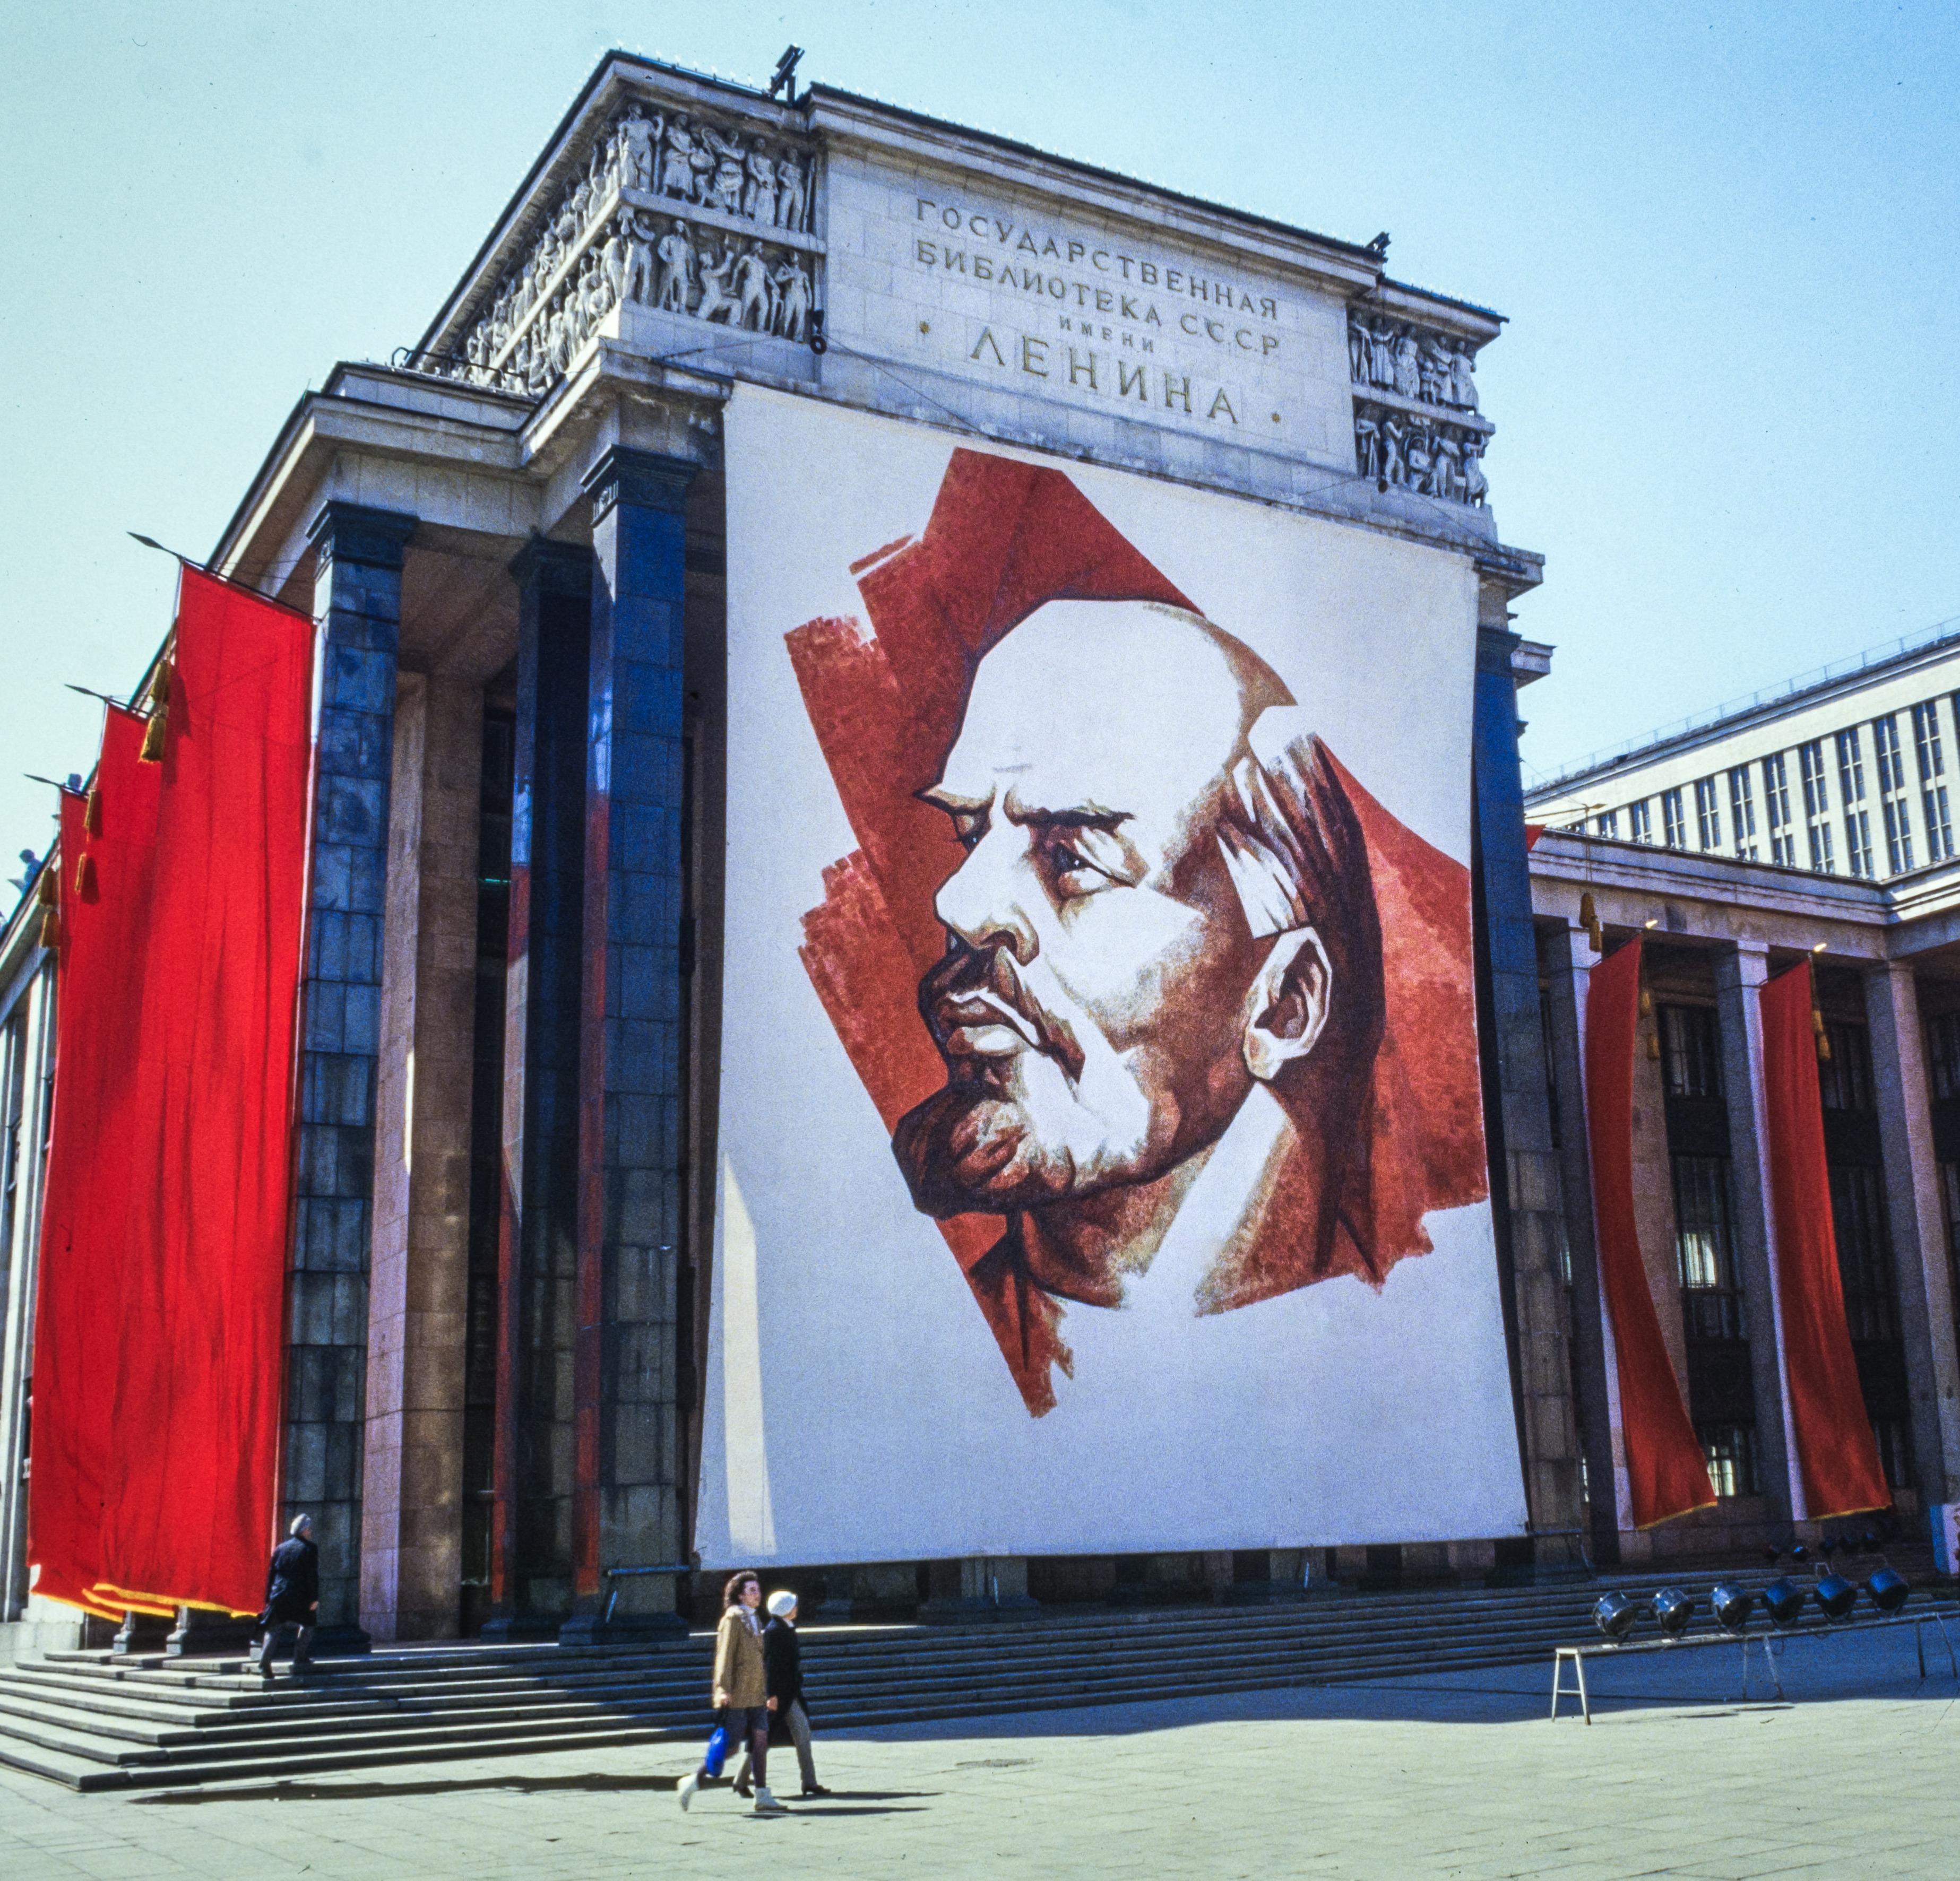 Гендиректор ВЦИОМ: «Ленин считался сверхчеловеком, но сейчас его личность померкла»